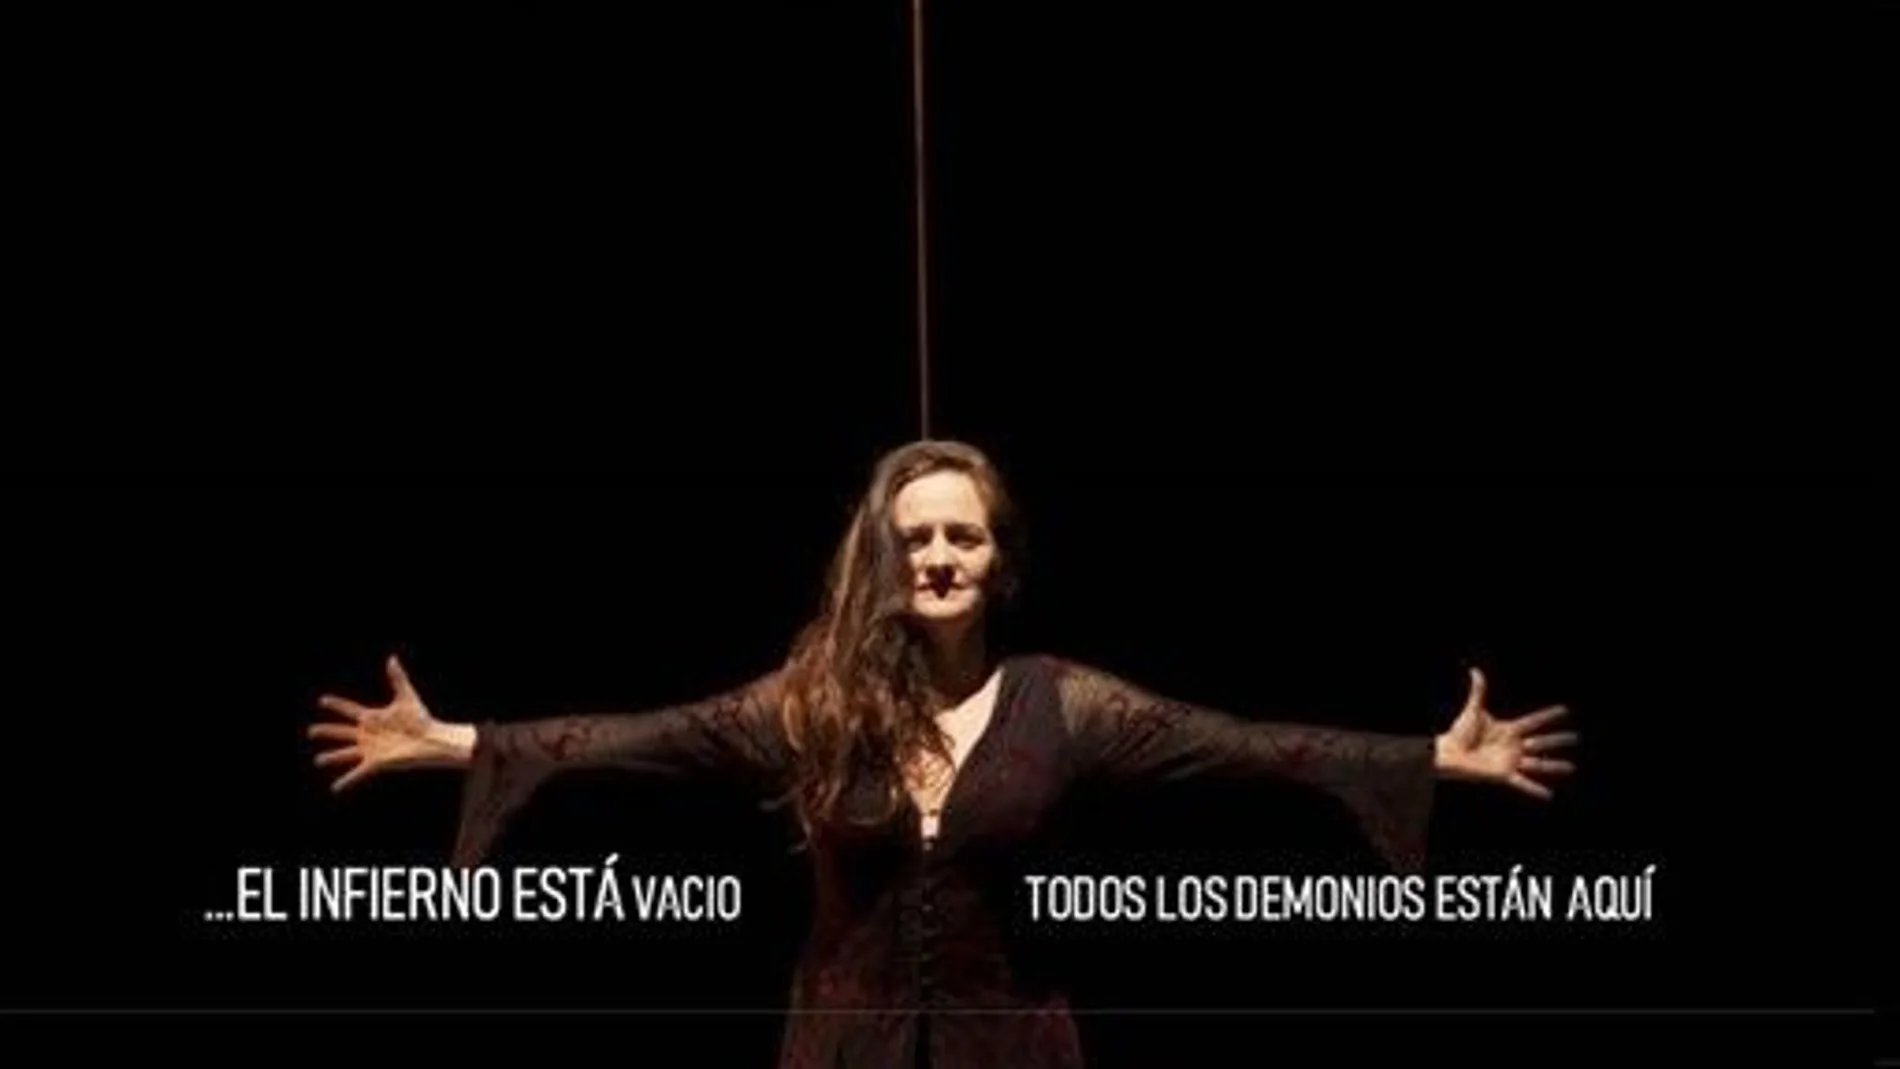 Cartel anunciador de la obra "Lucrecia", con Cristina Izquierdo